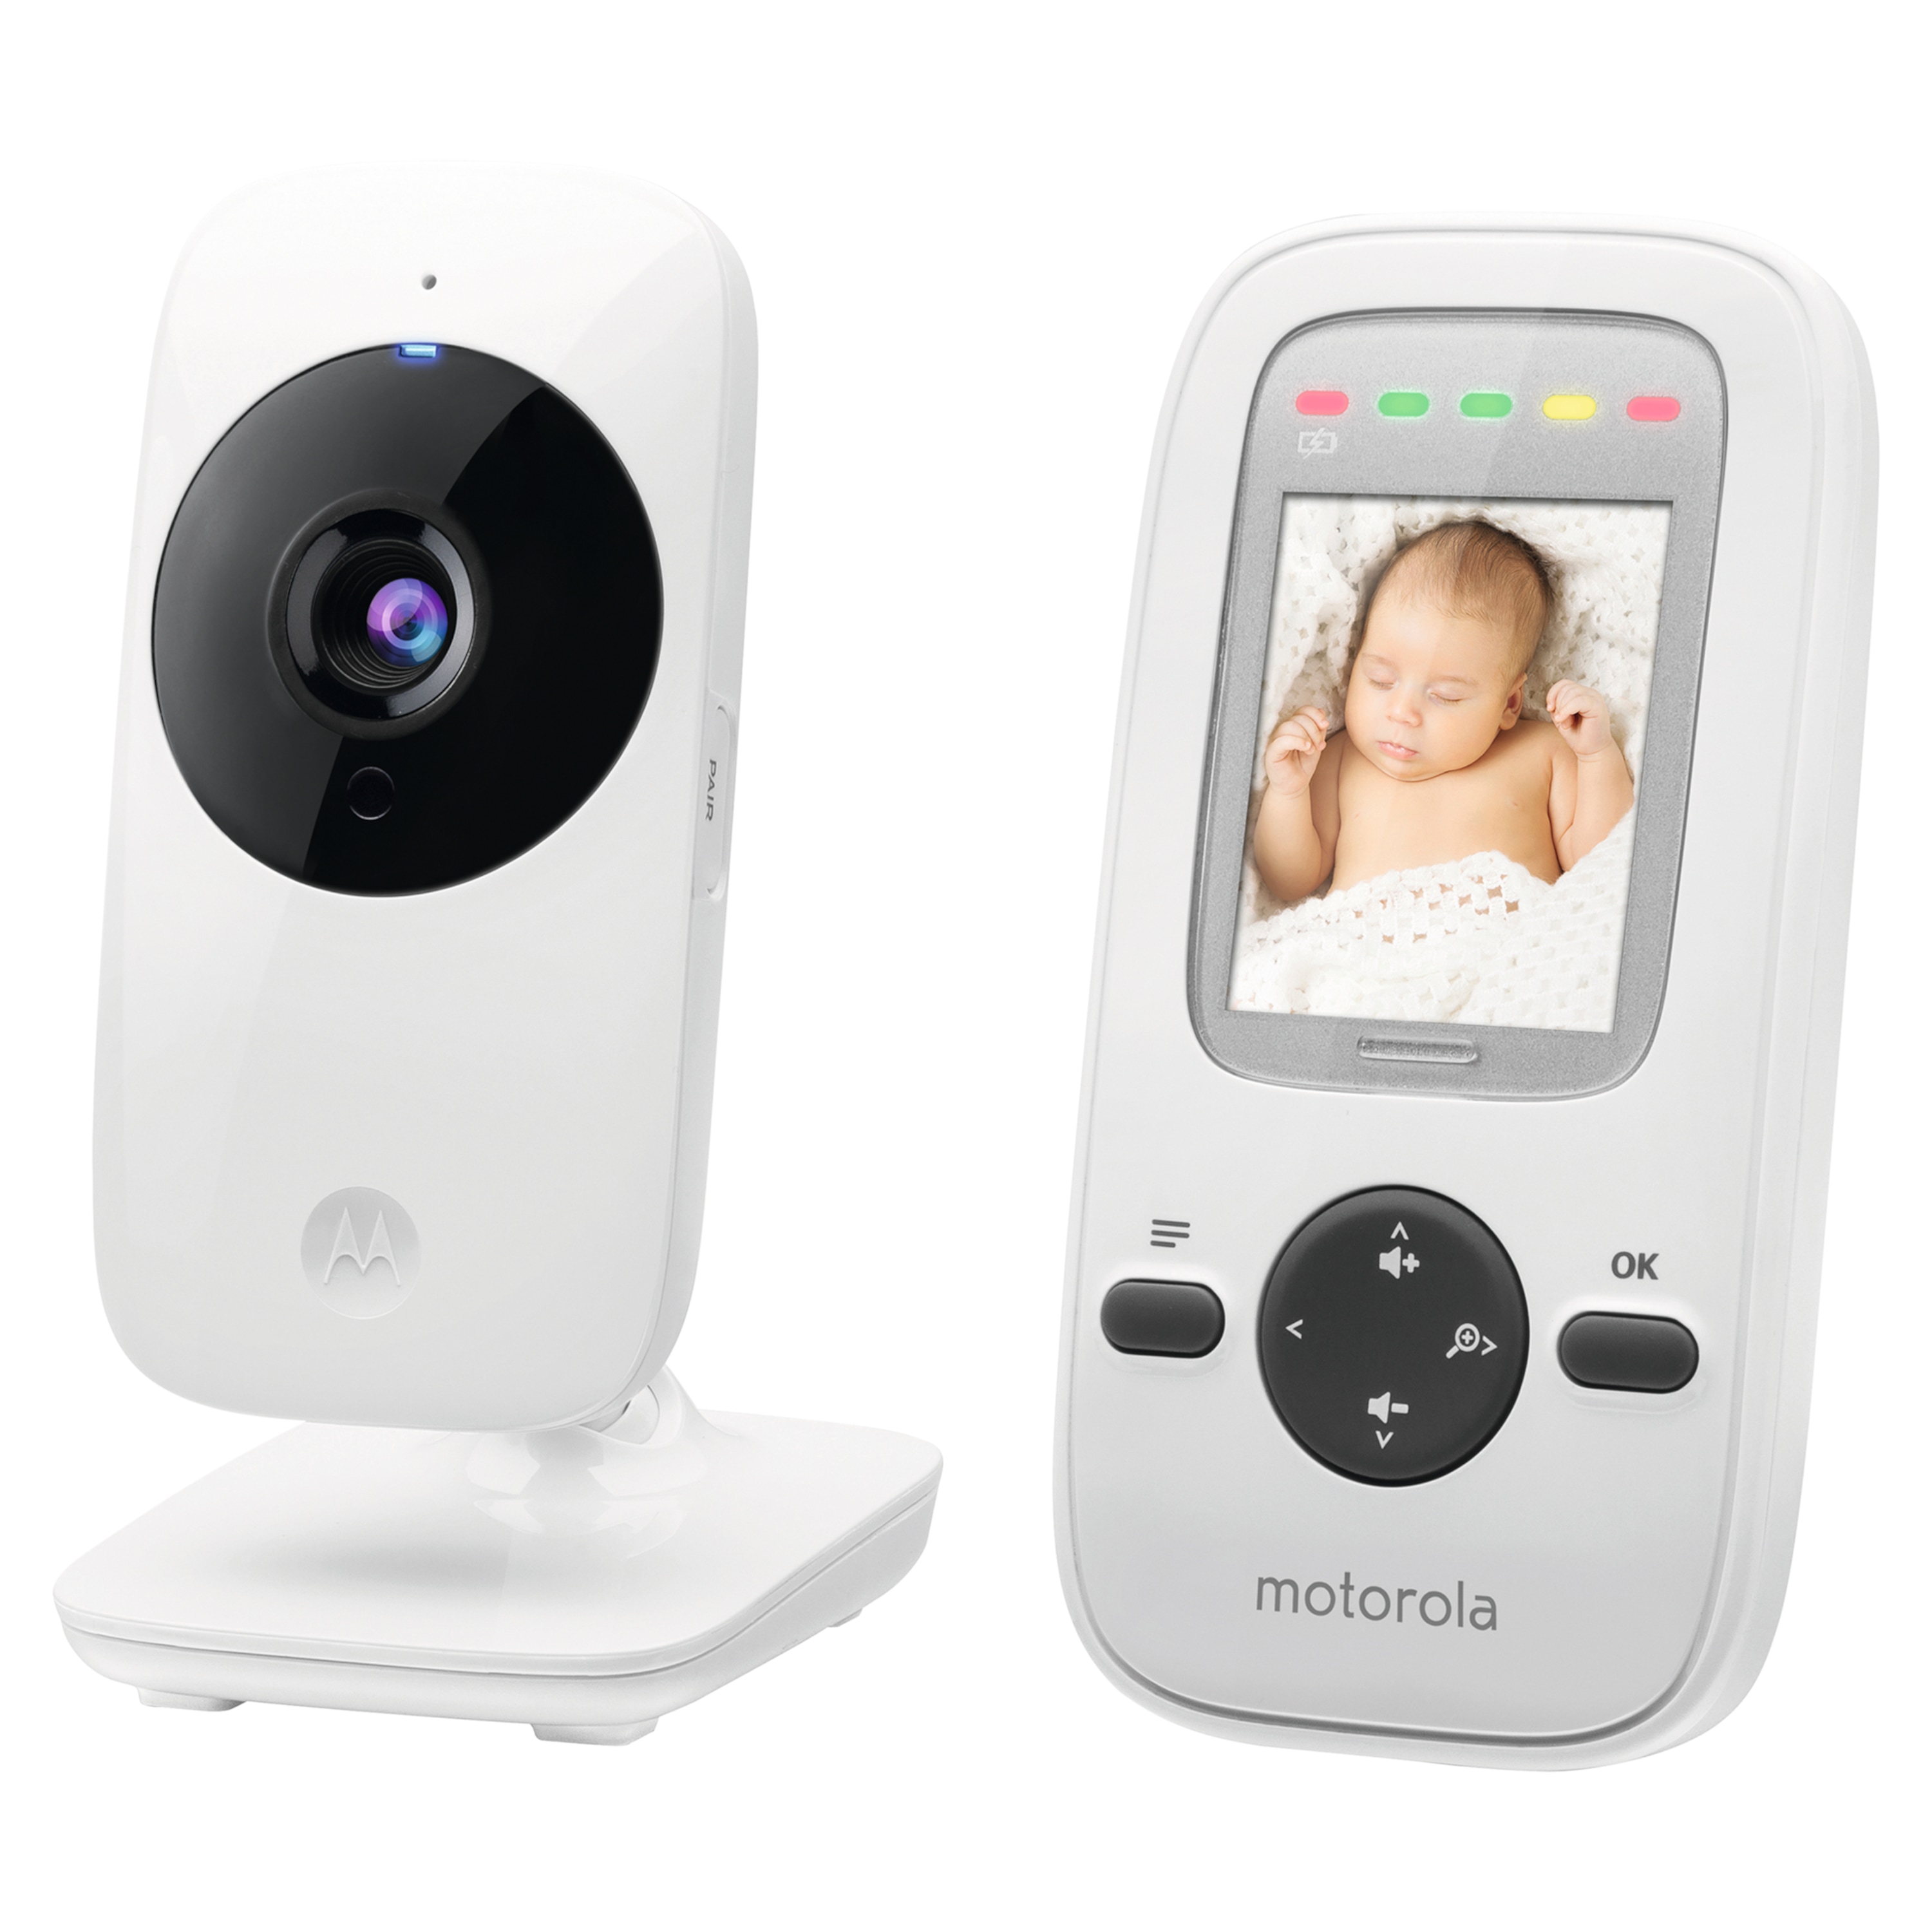 MOTOROLA MBP481 Video Babymonitor, 2'' LCD-Farbdisplay, Kamera mit Nachtsichtfunktion, übersichtlicher Monitor, hohe Übertragungssicherheit dank 2.4 GHz-Technologie